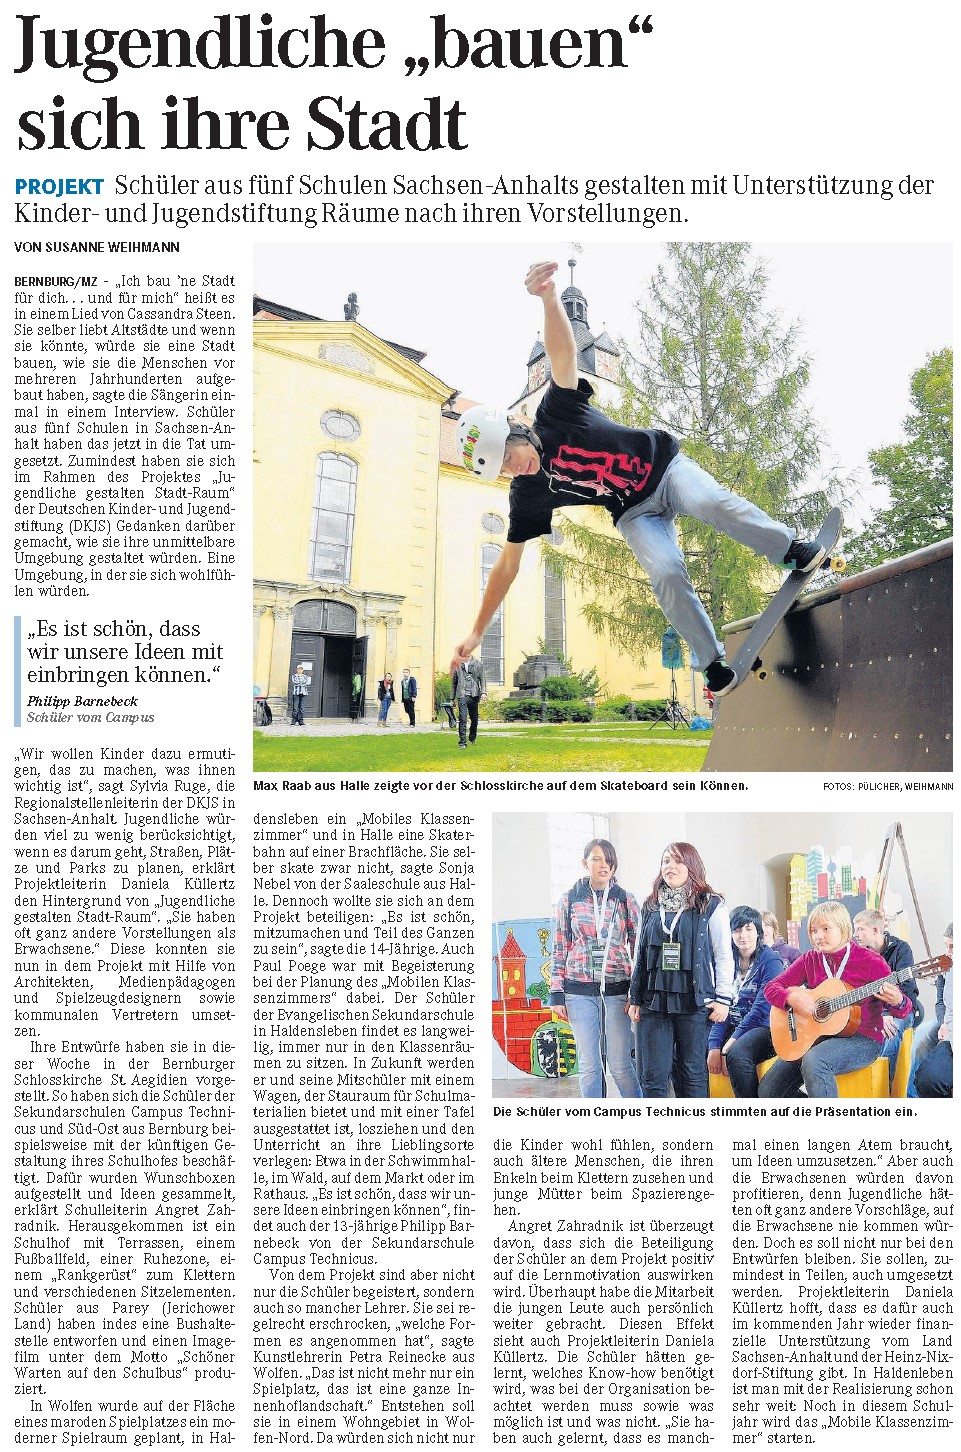  Mitteldeutsche Zeitung 14. 10. 2011